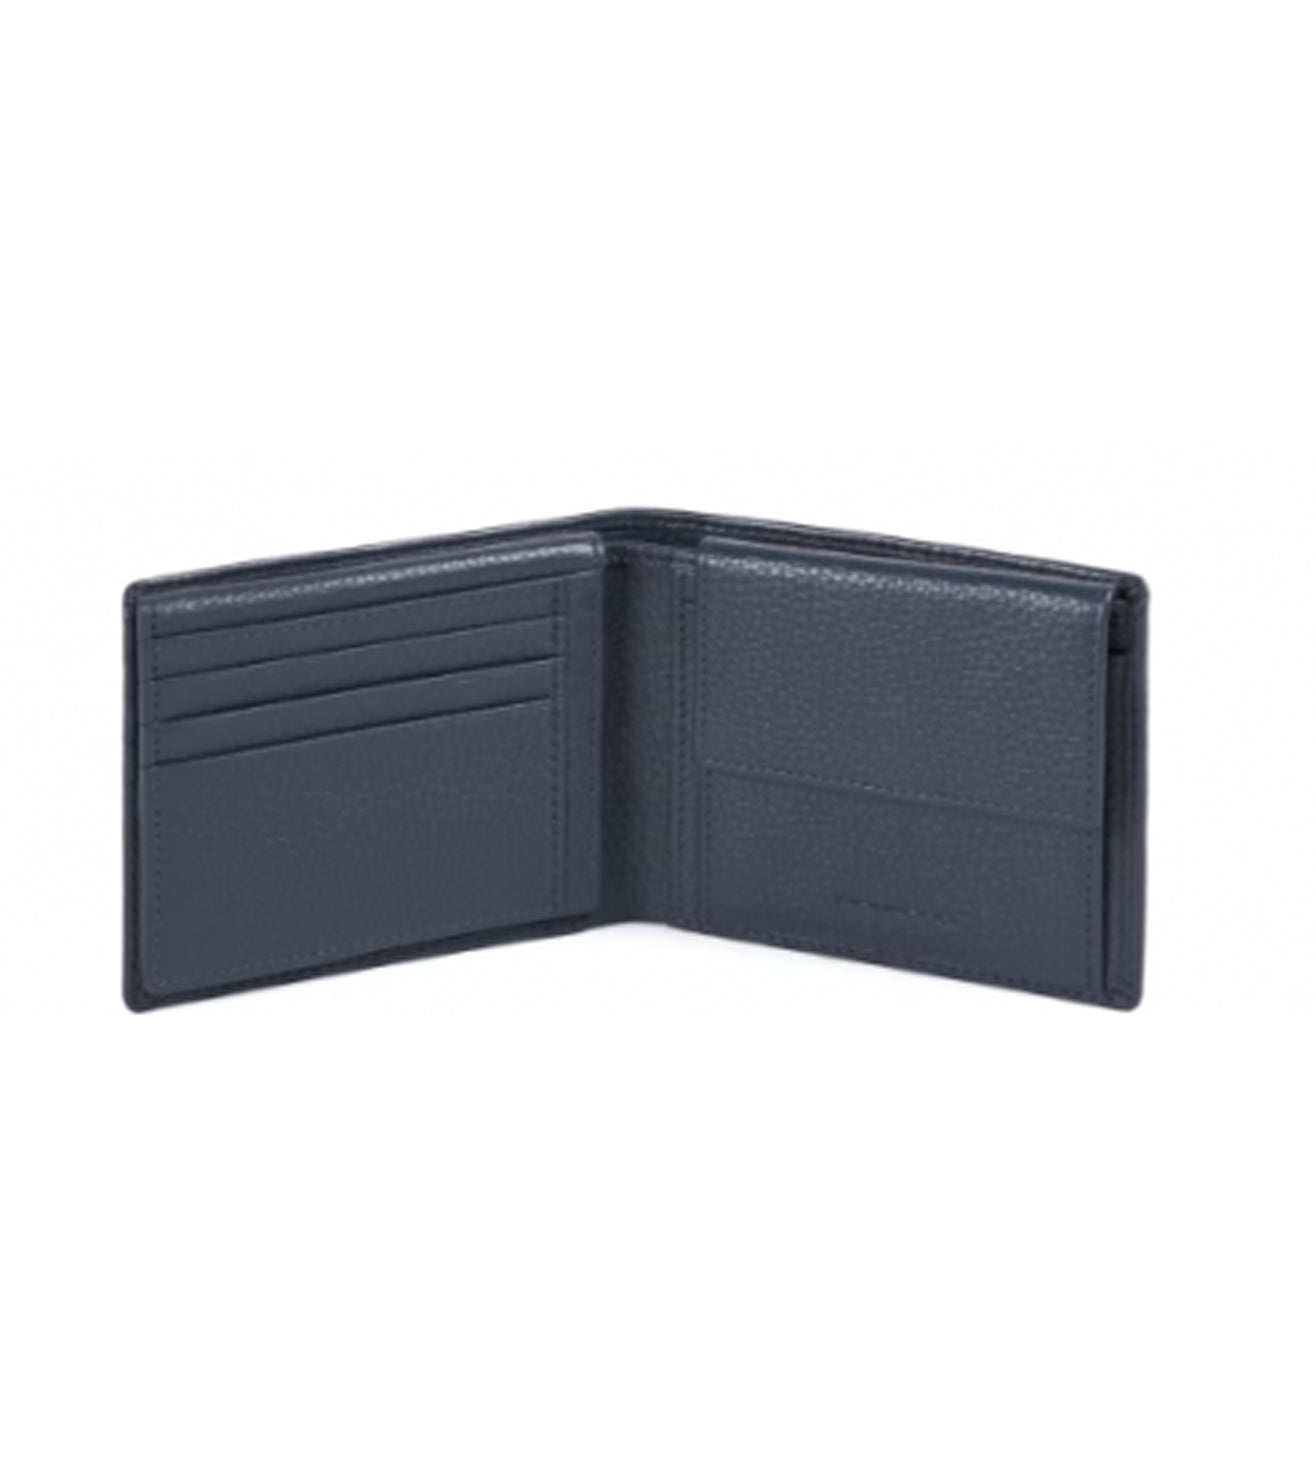 Piquadro Modus Special Men's Blue Wallet